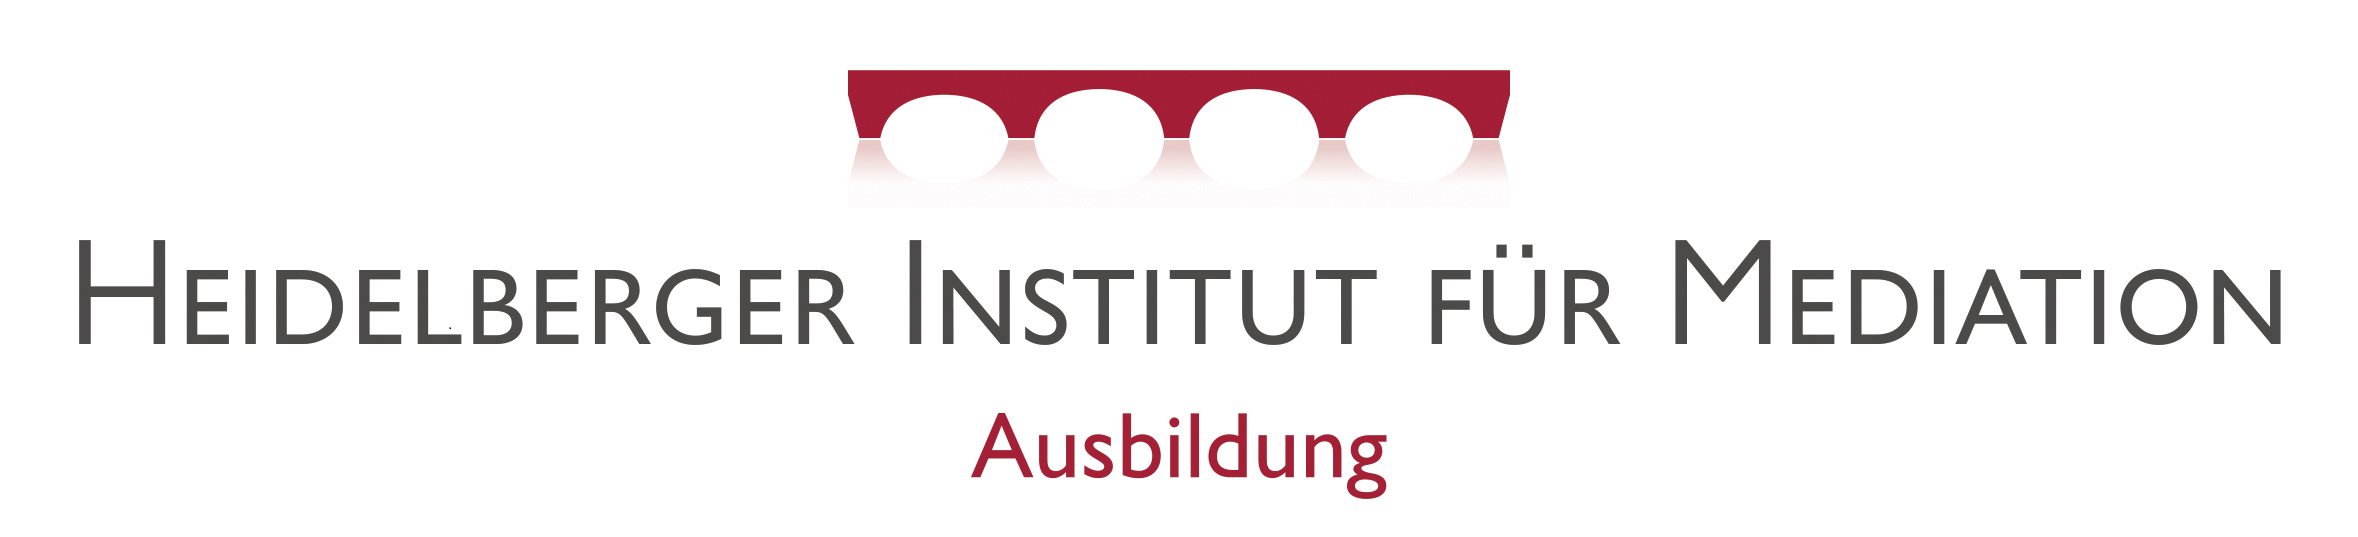 Heidelberger Institut für Mediation